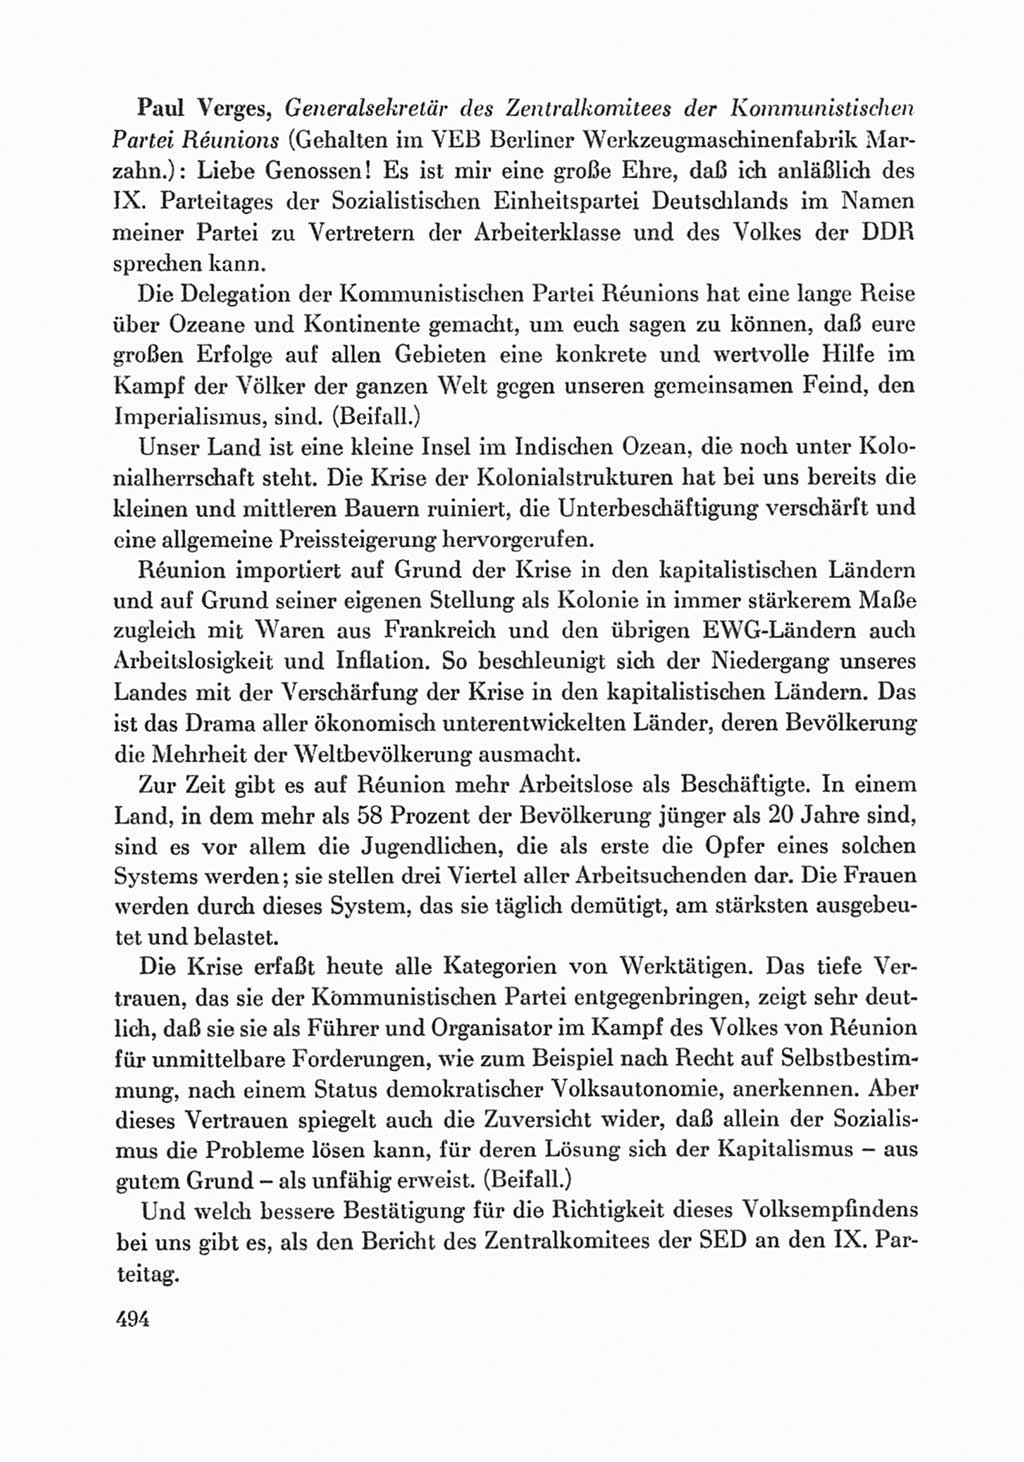 Protokoll der Verhandlungen des Ⅸ. Parteitages der Sozialistischen Einheitspartei Deutschlands (SED) [Deutsche Demokratische Republik (DDR)] 1976, Band 1, Seite 494 (Prot. Verh. Ⅸ. PT SED DDR 1976, Bd. 1, S. 494)